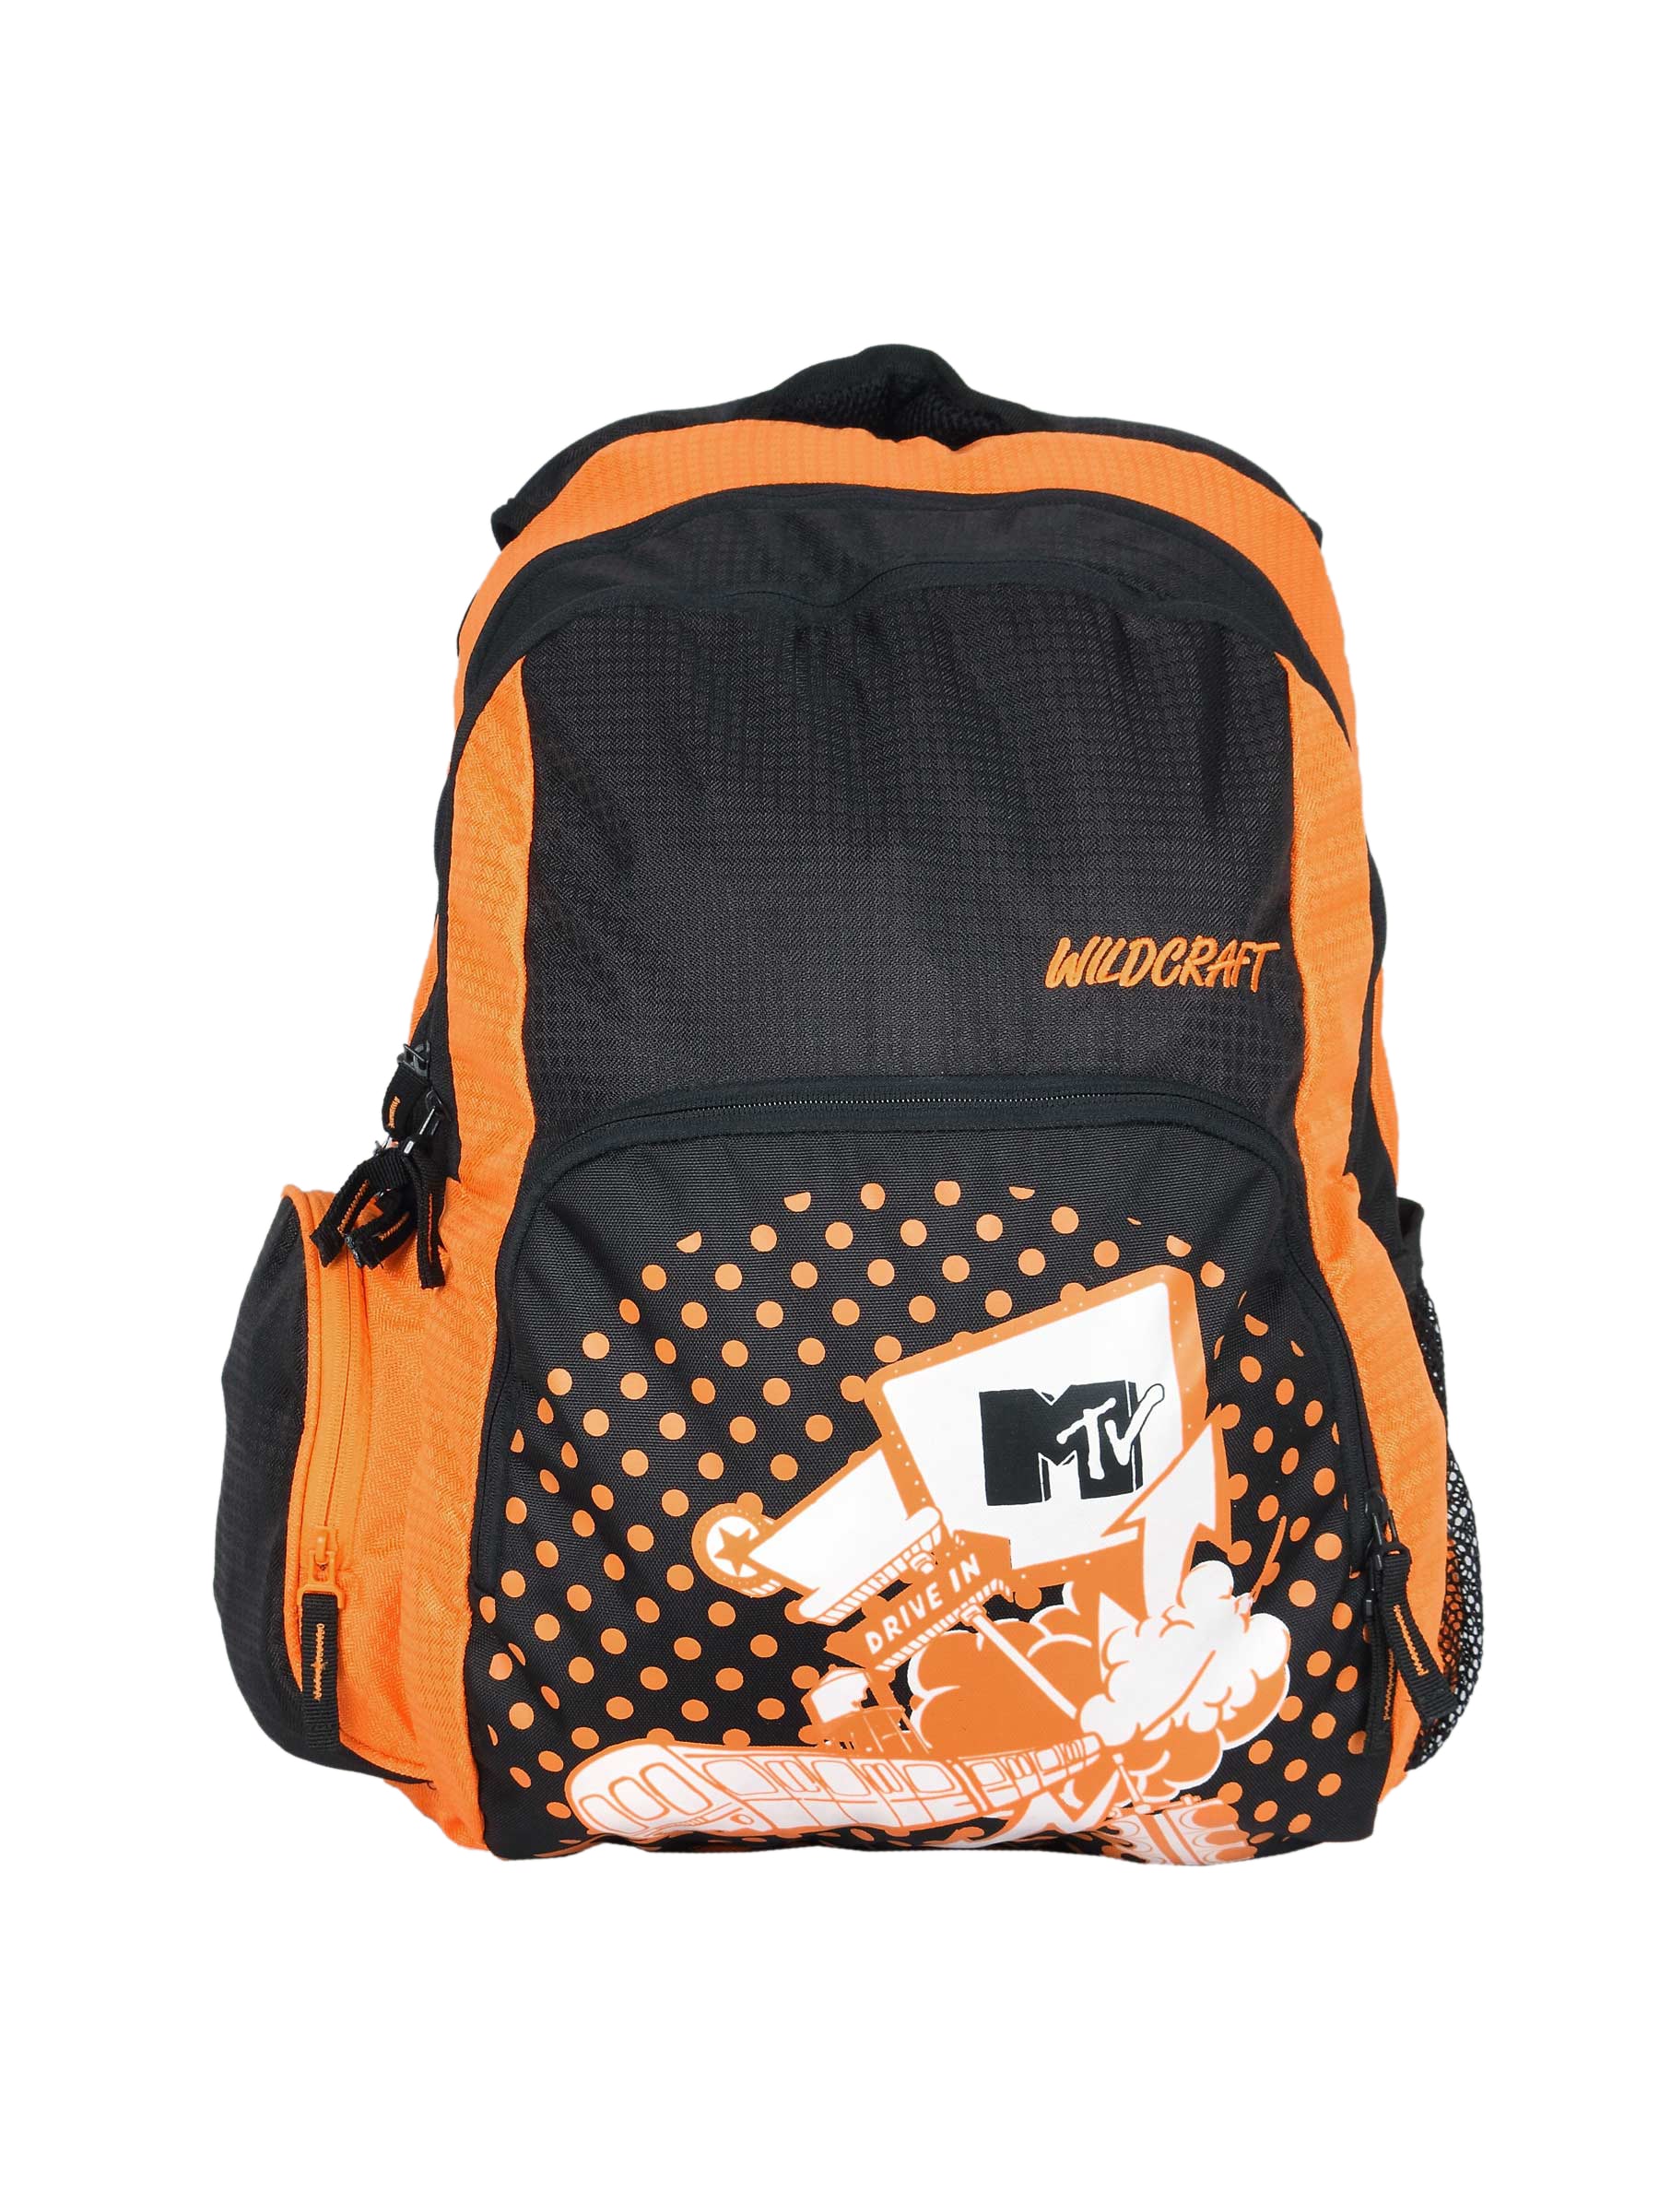 Wildcraft Unisex Orange Printed Backpack